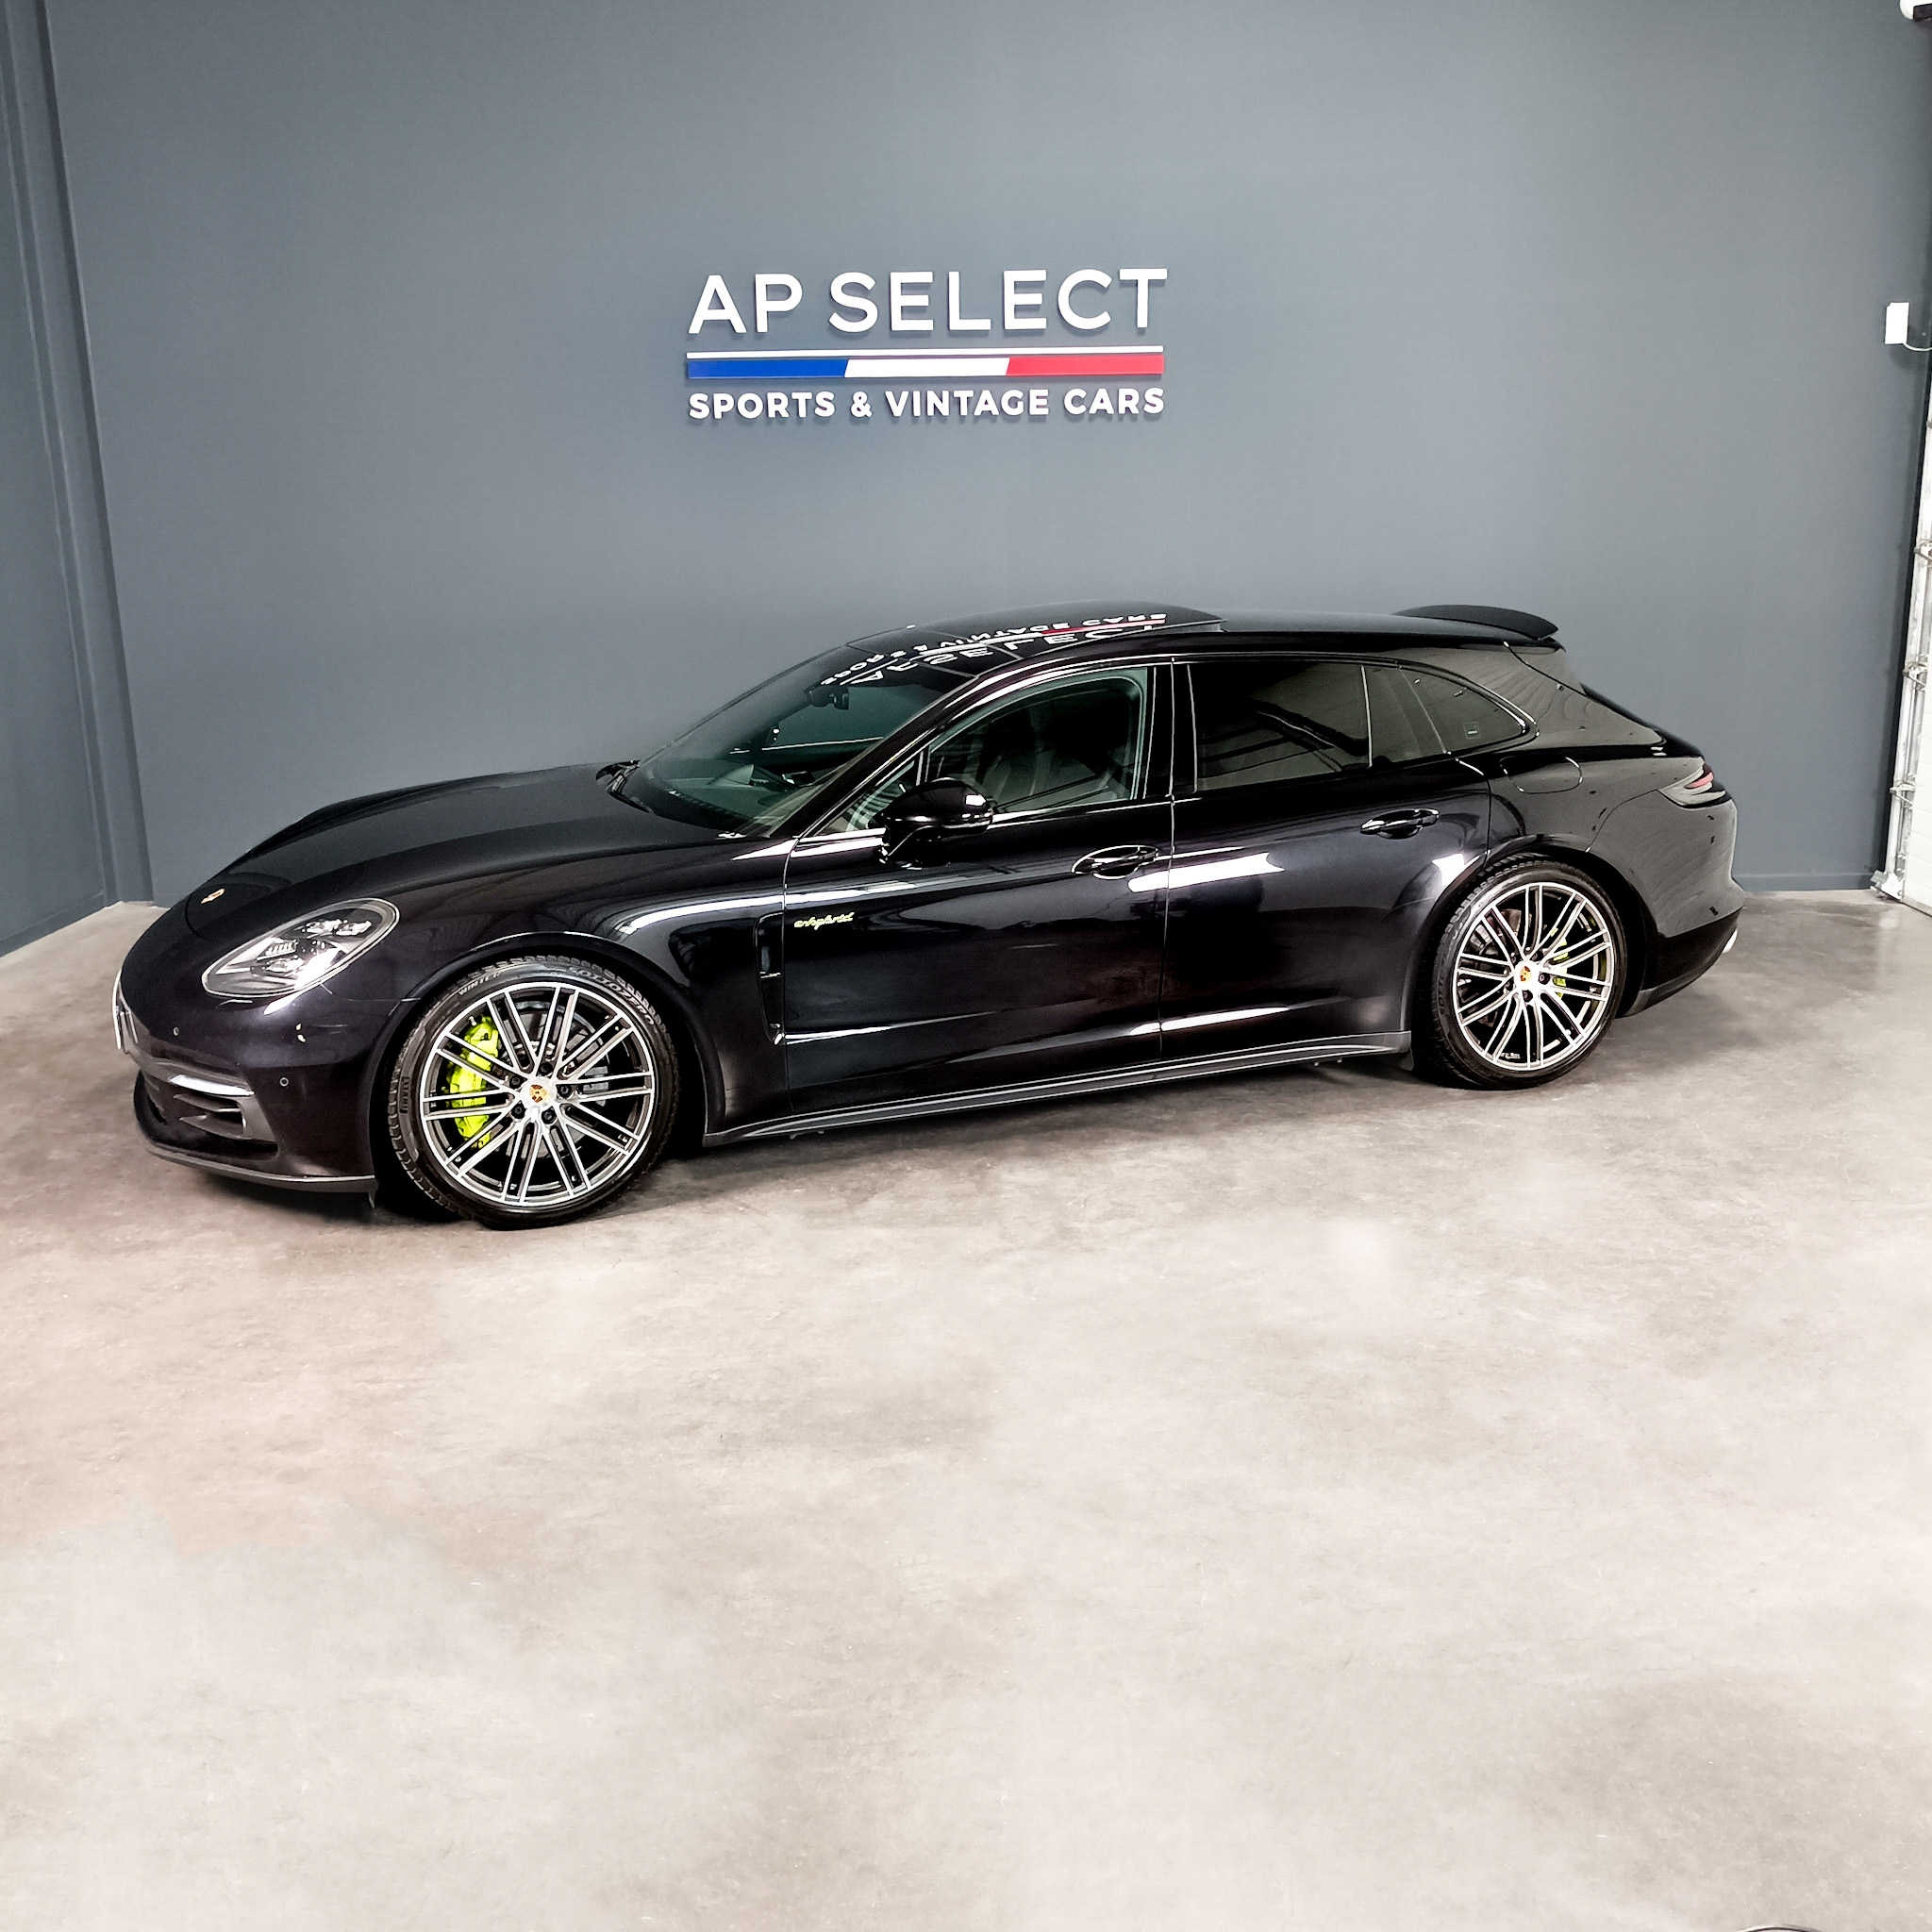 Photographie d'une Porsche Panamera 4  vue de trois quarts face dans les locaux d'AP SELECT